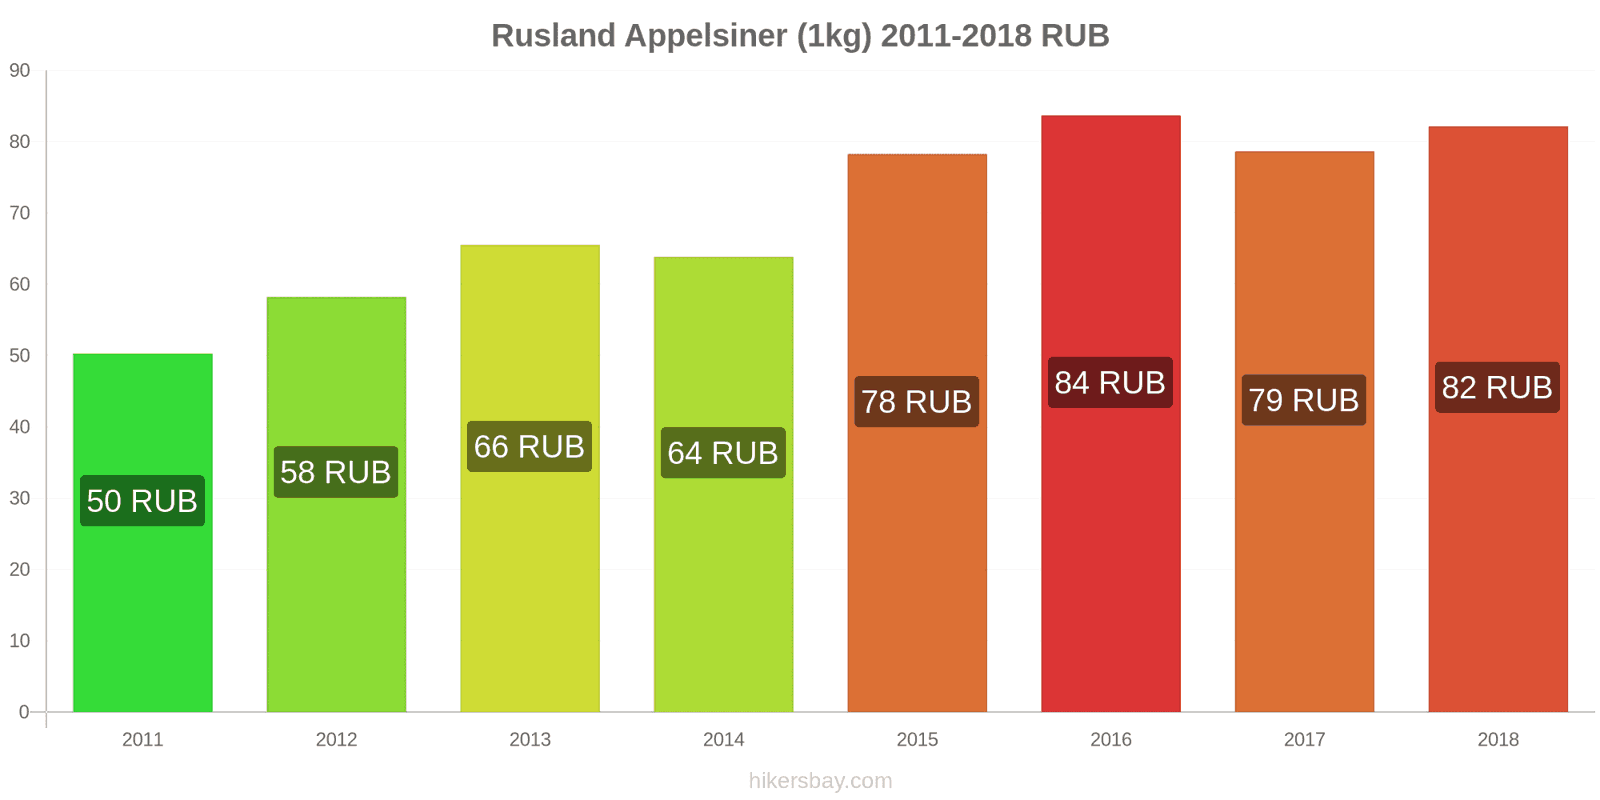 Rusland prisændringer Appelsiner (1kg) hikersbay.com